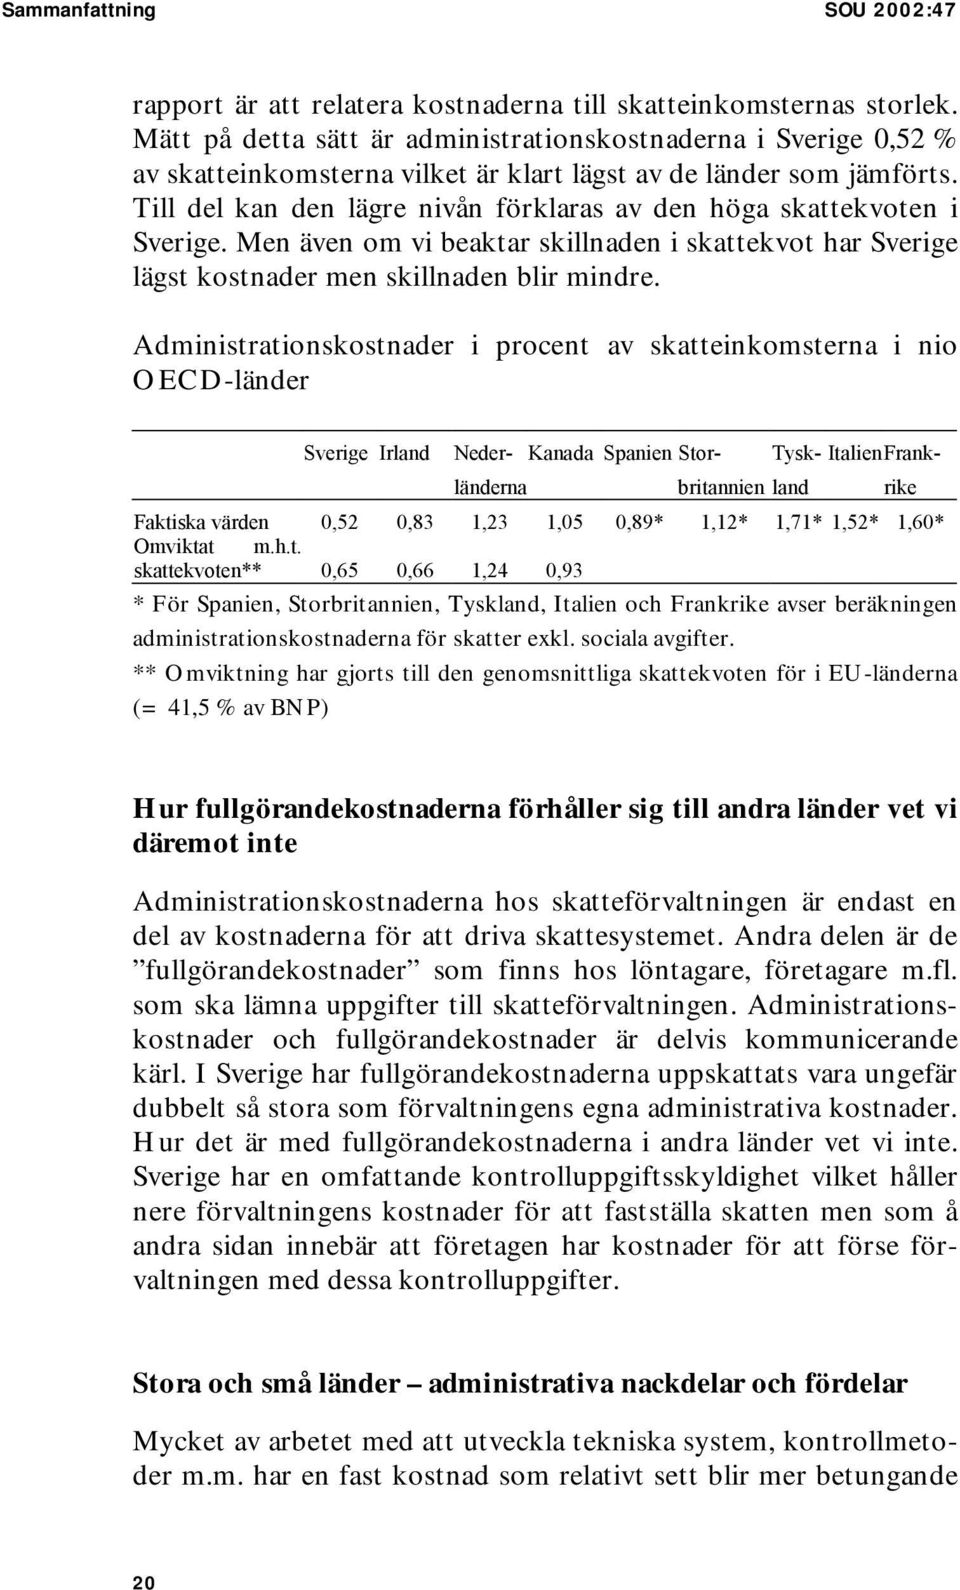 Till del kan den lägre nivån förklaras av den höga skattekvoten i Sverige. Men även om vi beaktar skillnaden i skattekvot har Sverige lägst kostnader men skillnaden blir mindre.